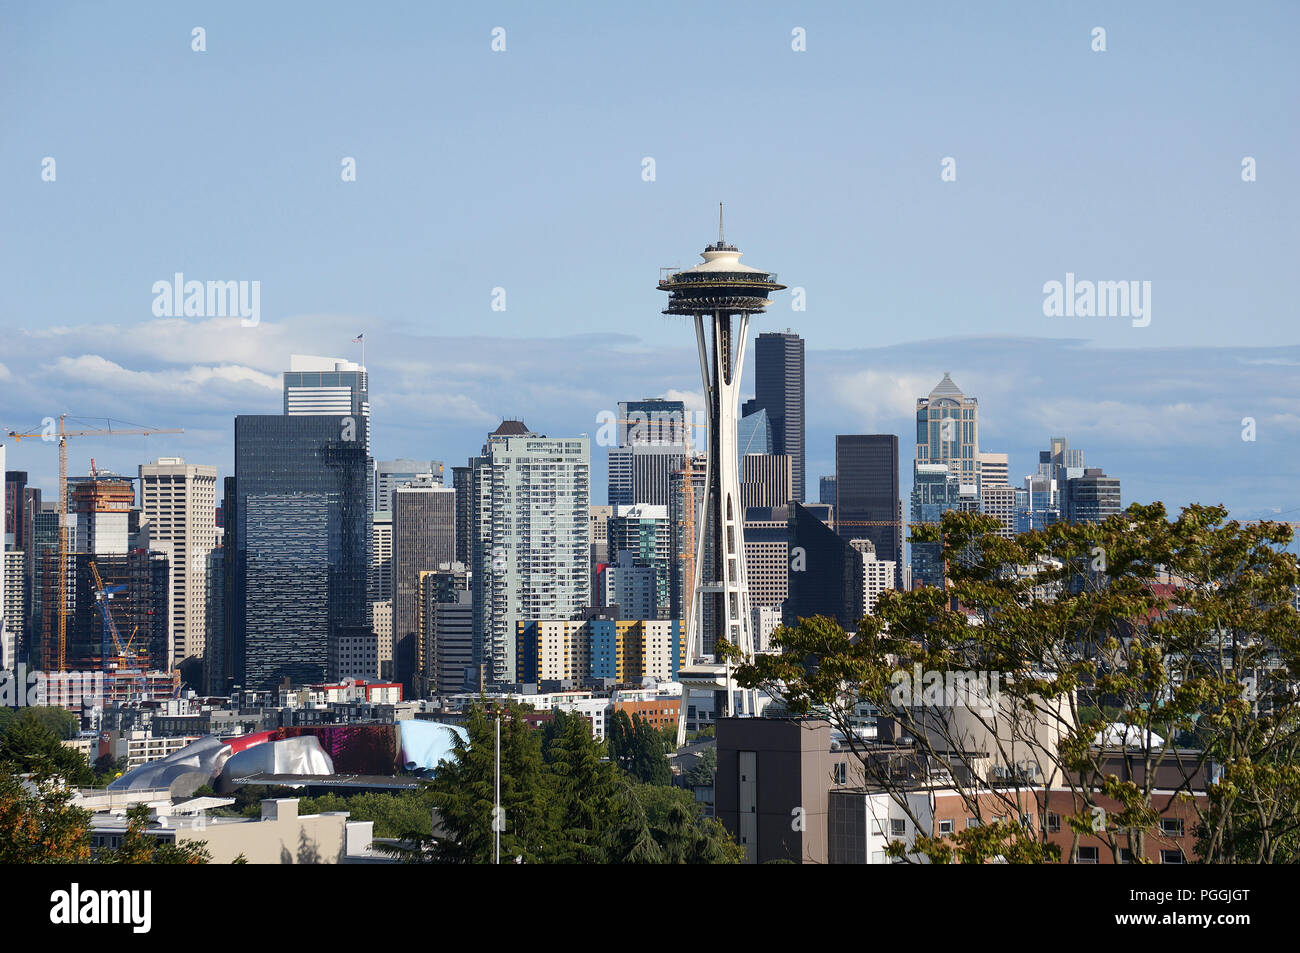 Seattle skyline seen from Kerry Park, Seattle, Washington, USA Stock Photo